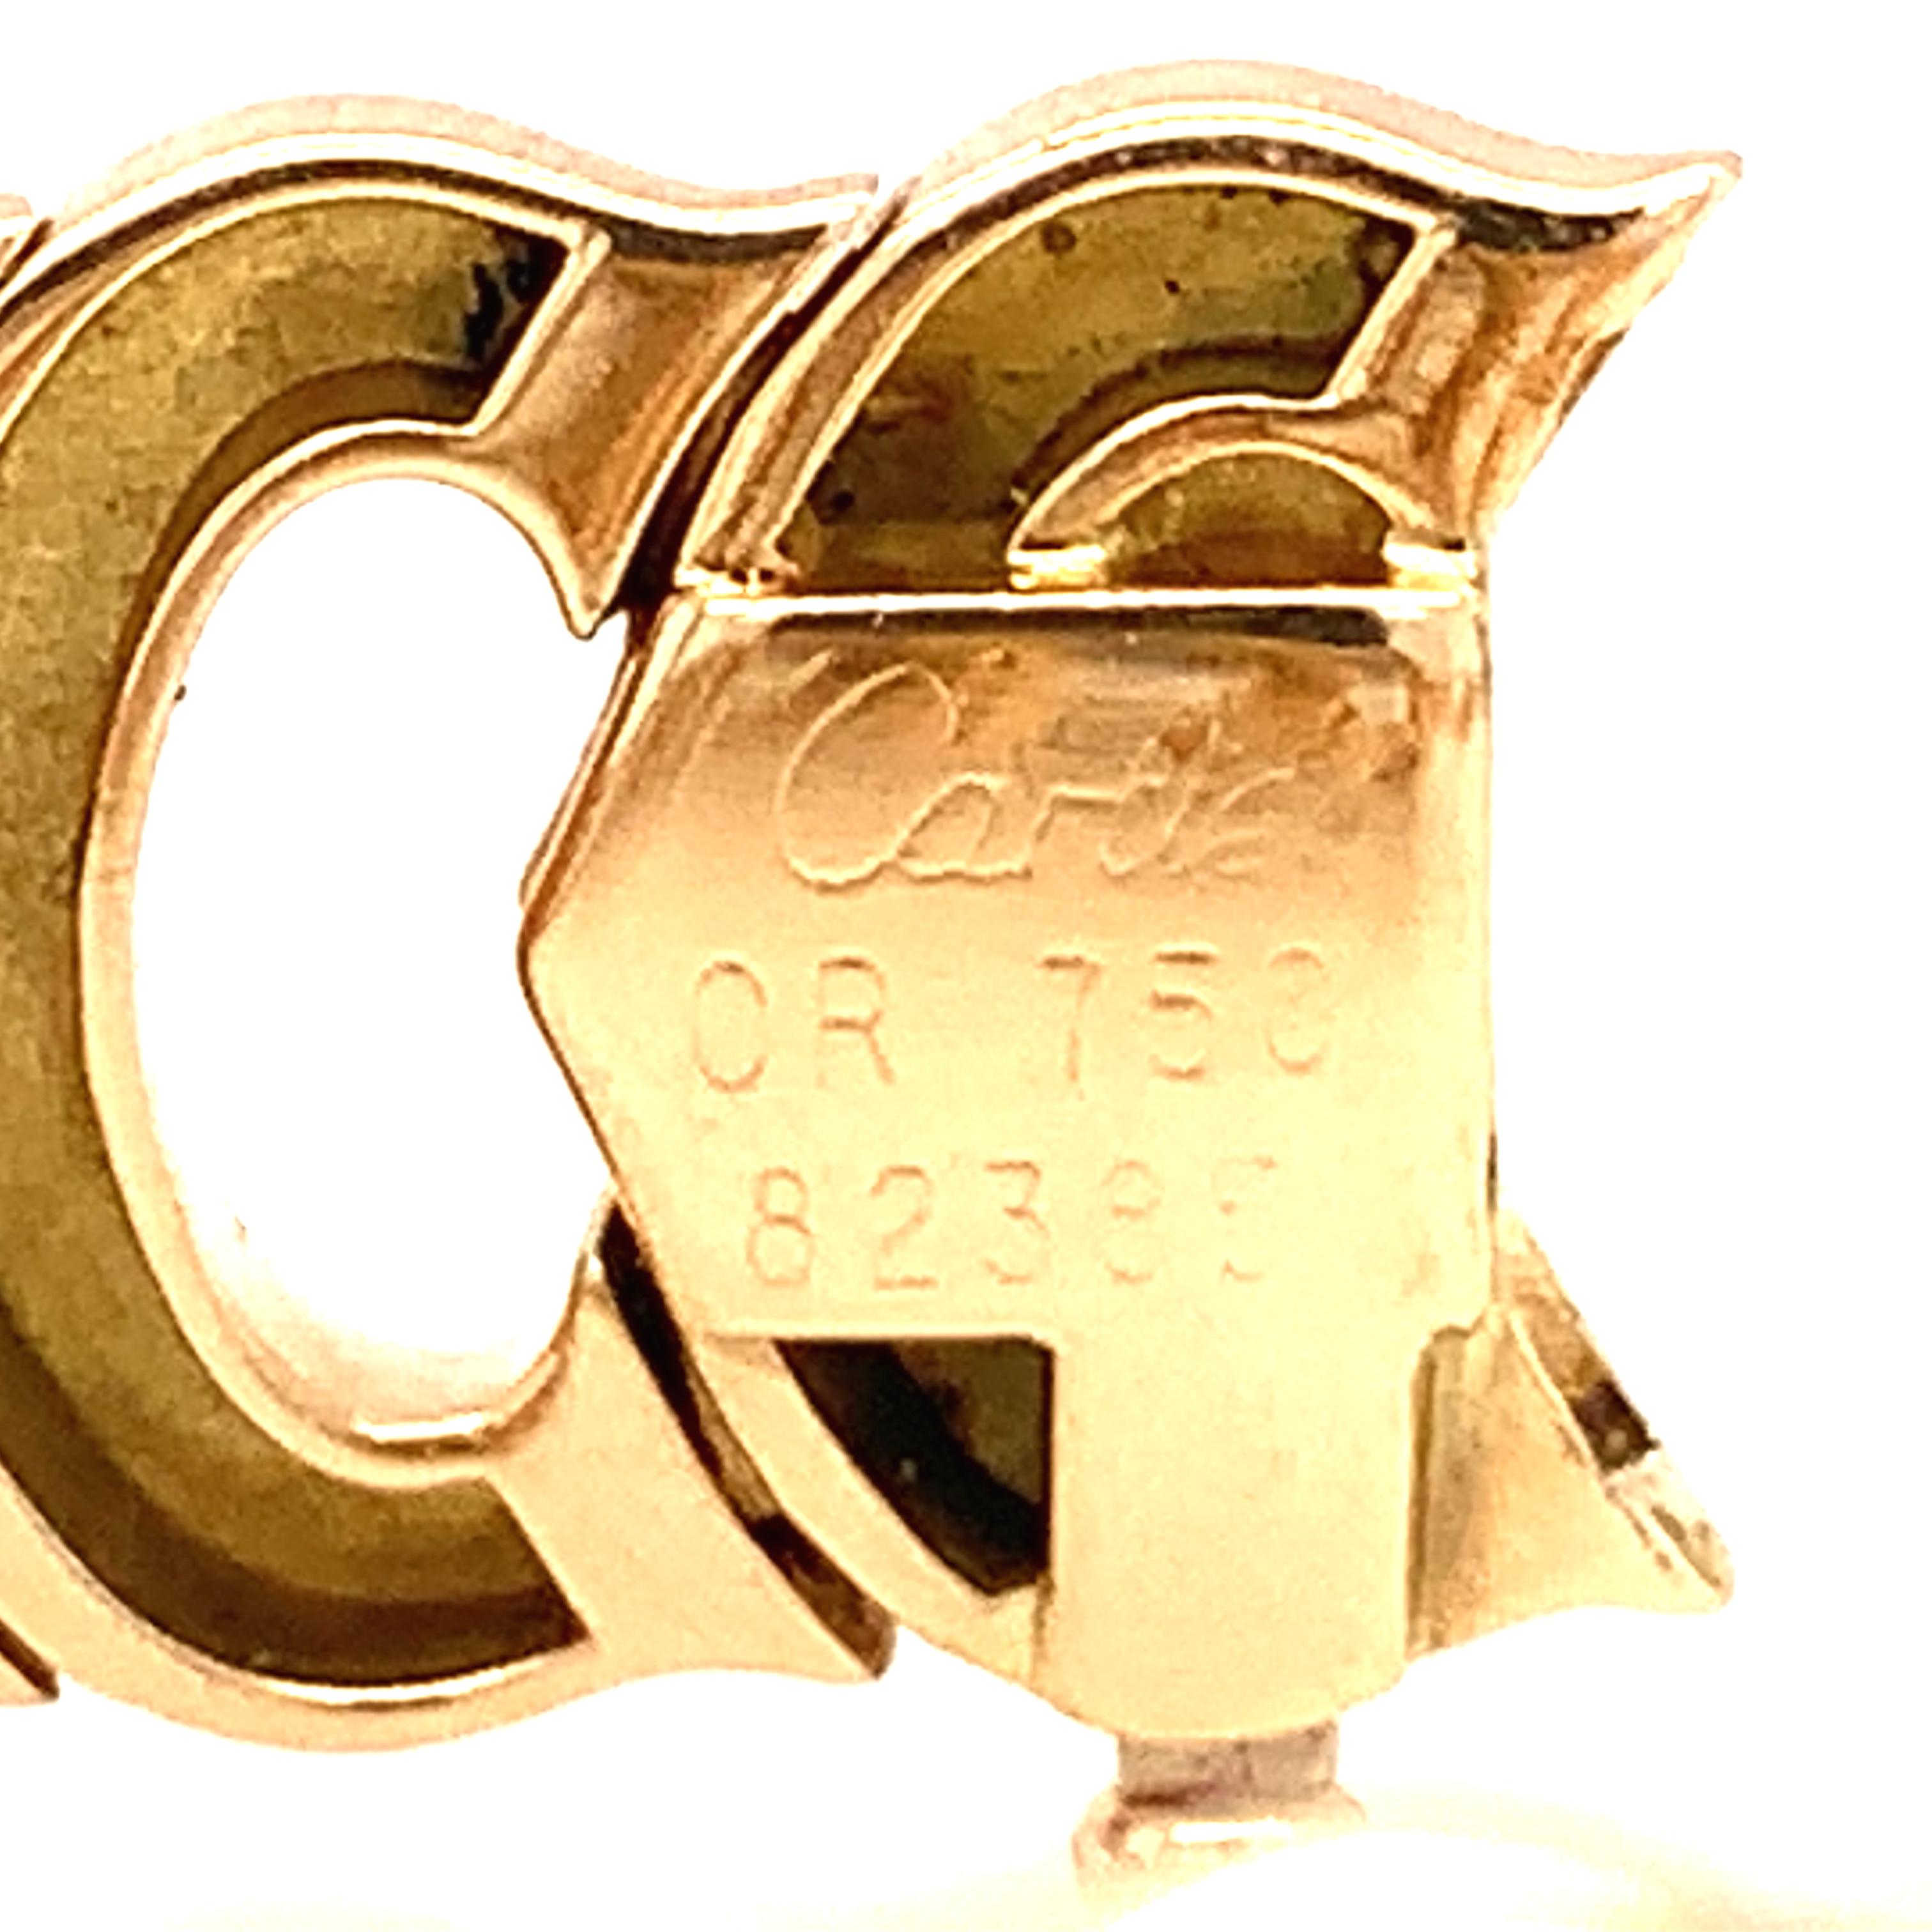 Ein ESTATE C DE CARTIER Gliederarmband aus 18 Karat Gelbgold mit einer Breite von 1/2 Zoll, begleitet von einer originalen Cartier-Box, ca. 1980er Jahre. 

Unverfälscht, golden, herrlich.  

Metall: 18K Gelbgold
Circa: 1980er